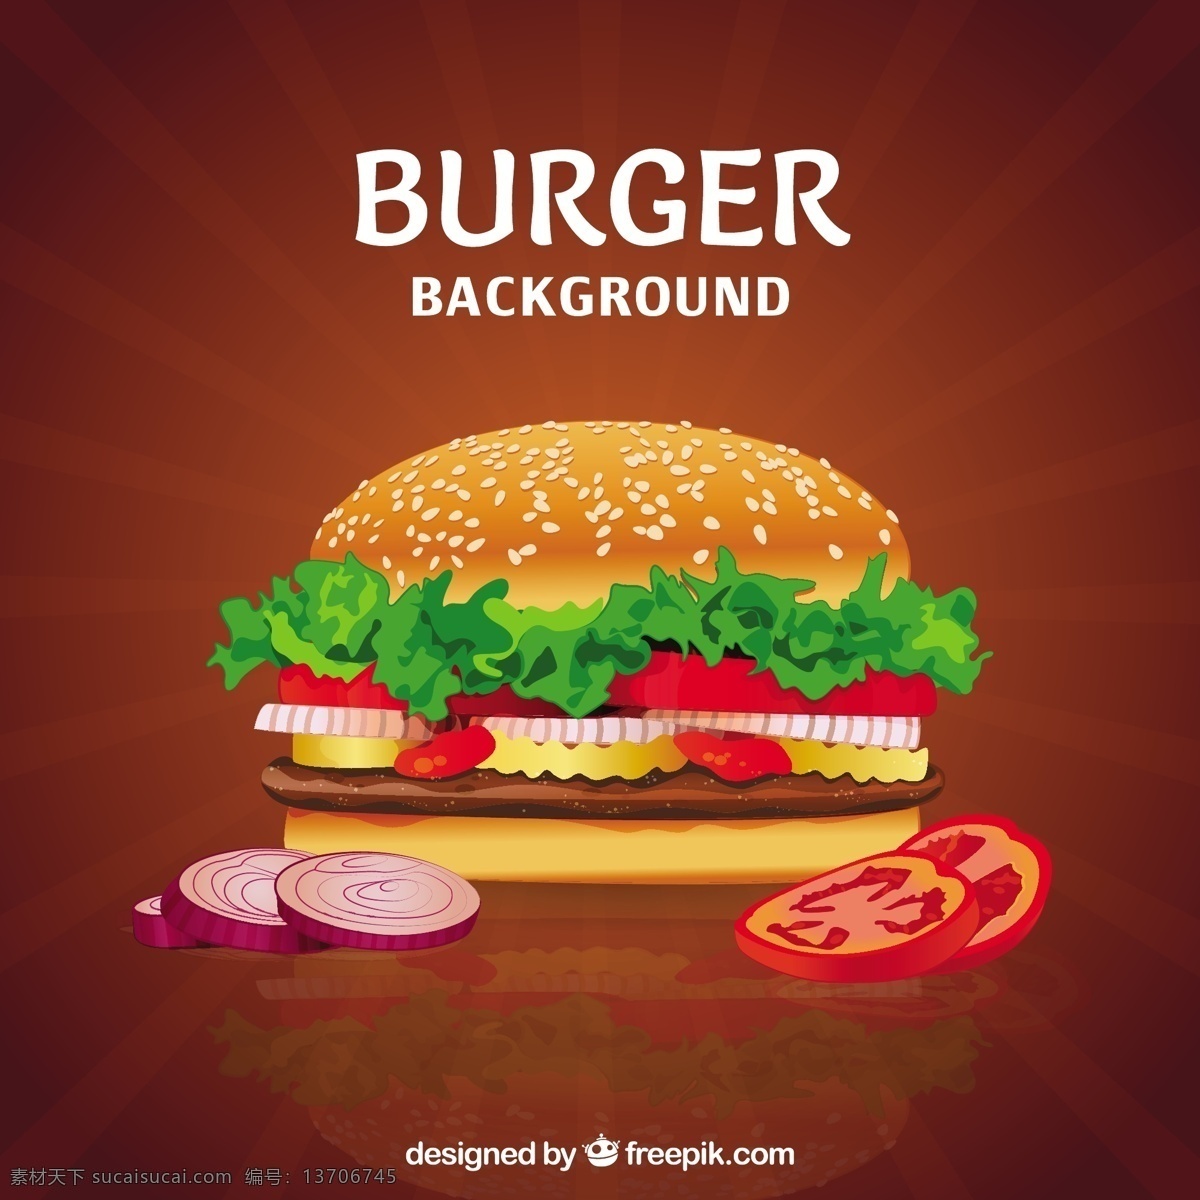 美味 写实 风格 汉堡 插图 背景 写实风格 汉堡插图